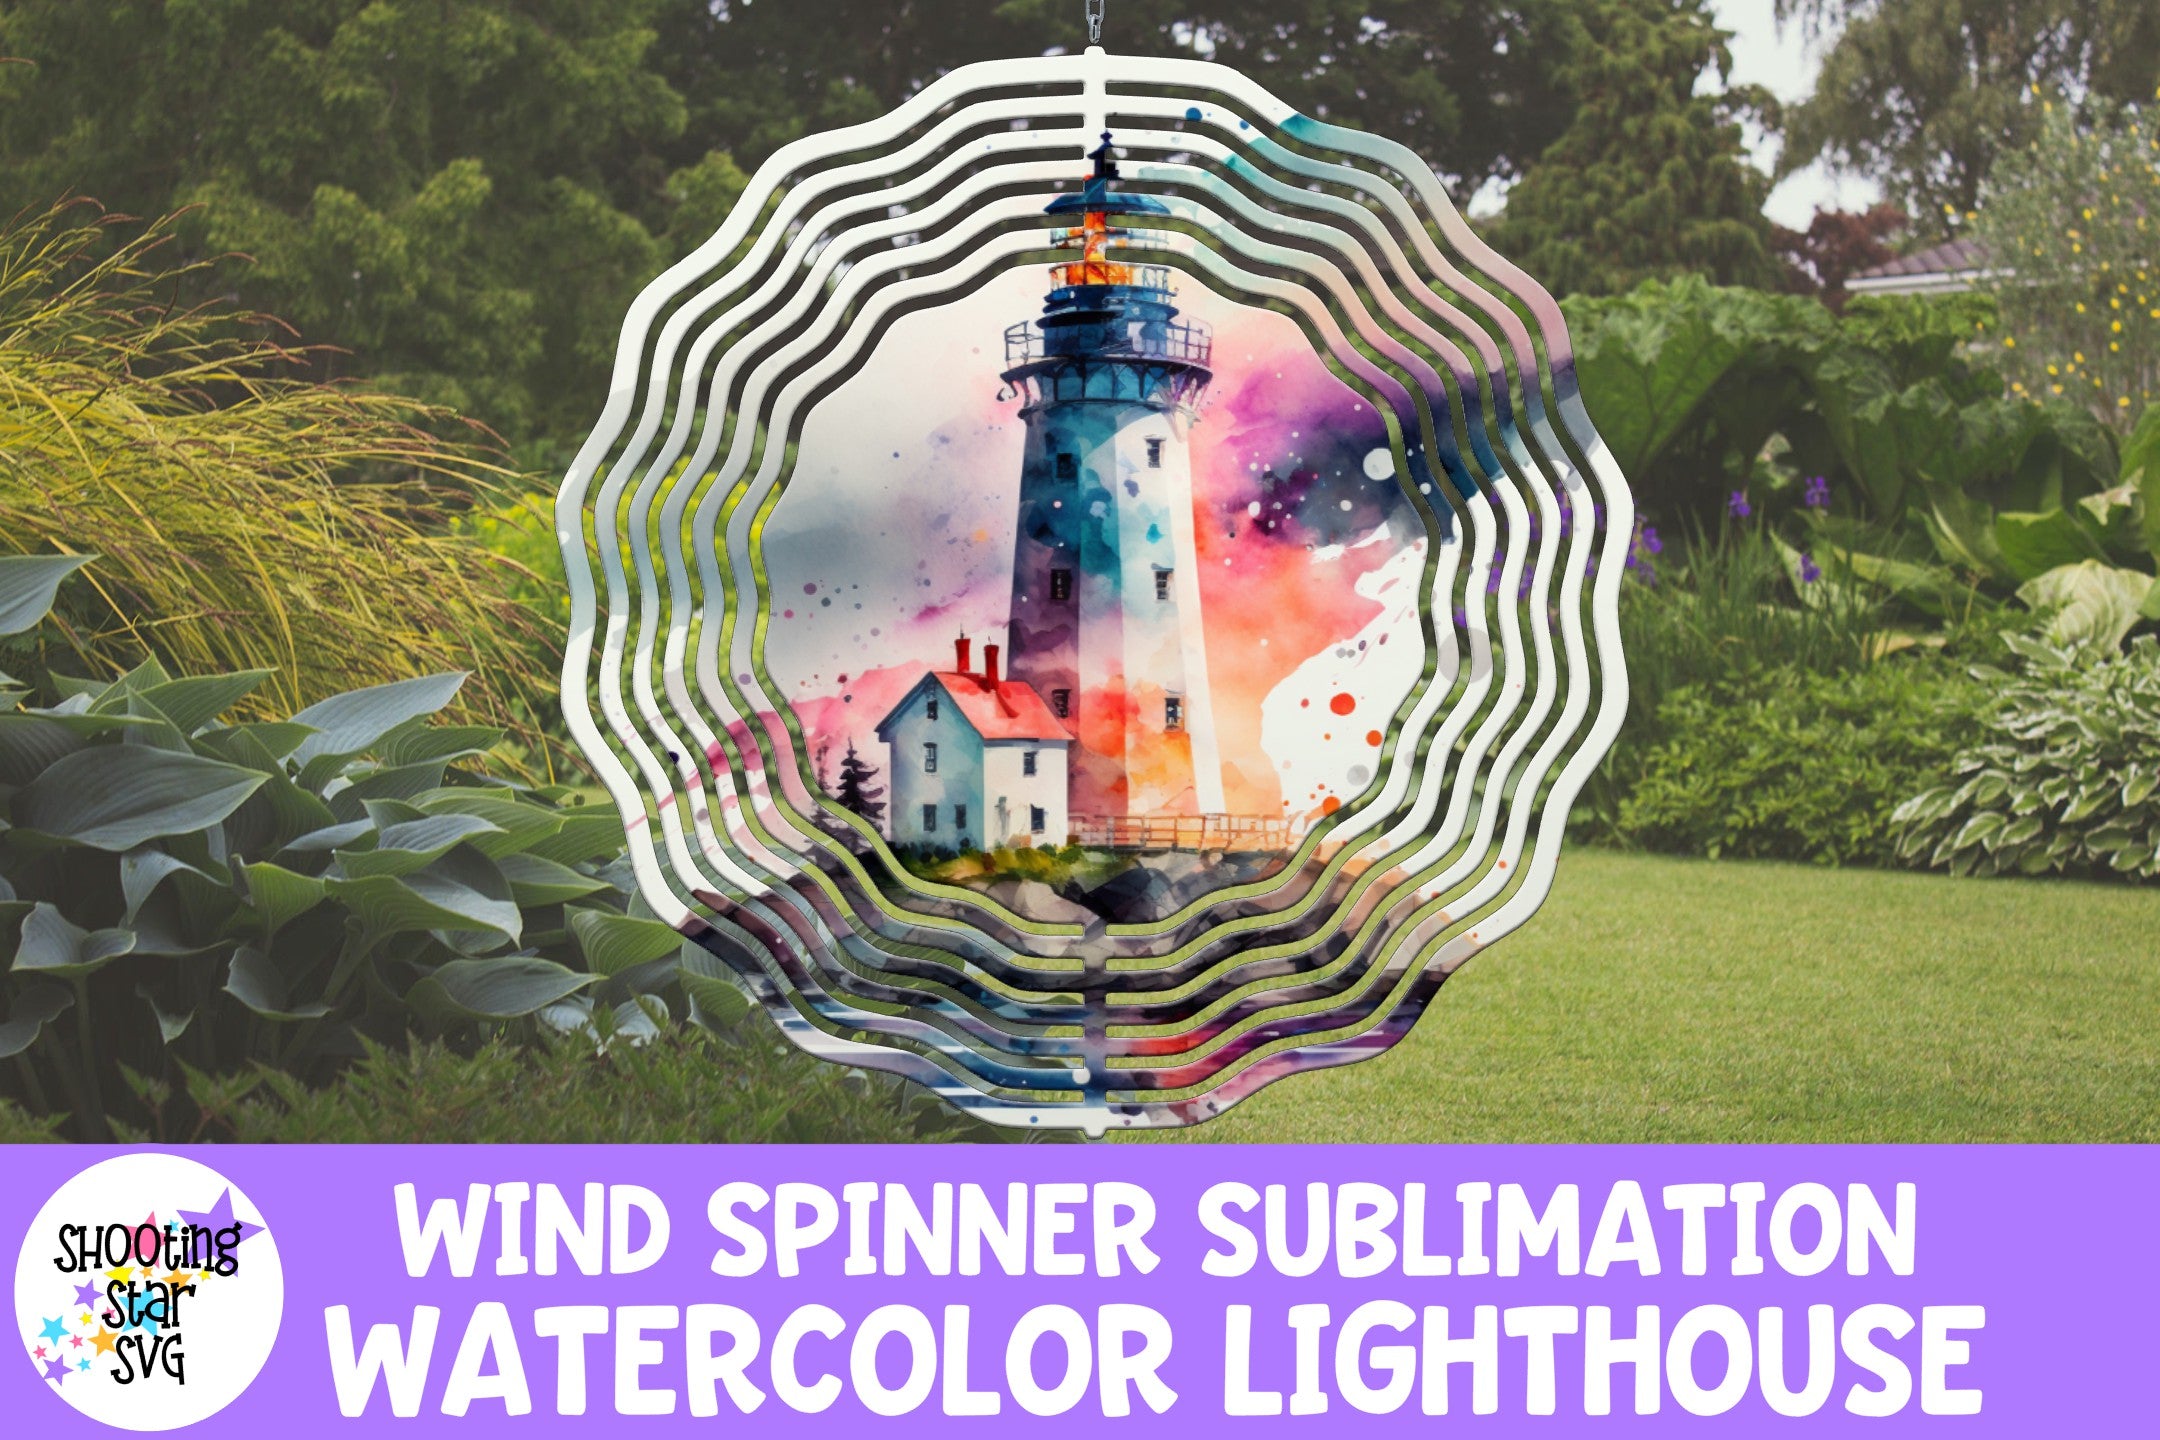 Wind spinner sublimation bundle